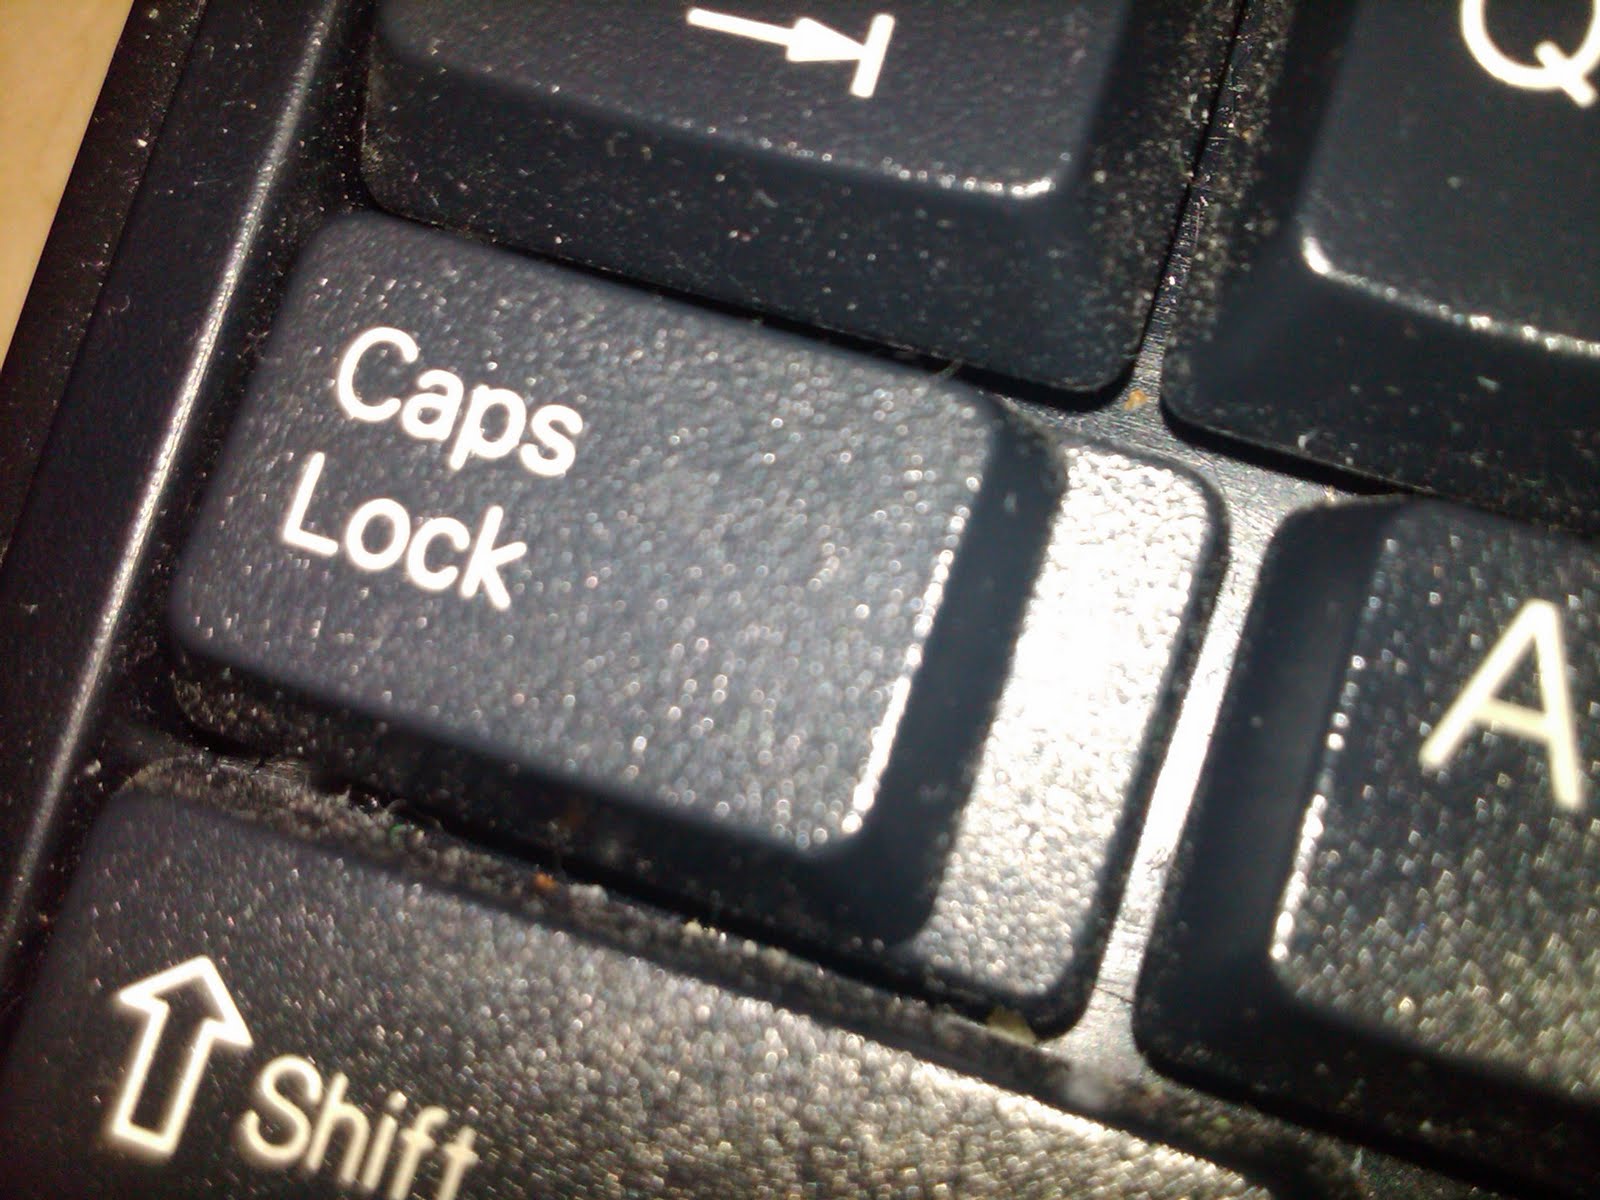 Капслок клавишами. Капс лок на клавиатуре. Кнопка капс лок. Клавиша caps Lock на клавиатуре. Кнопка капслок на клавиатуре.